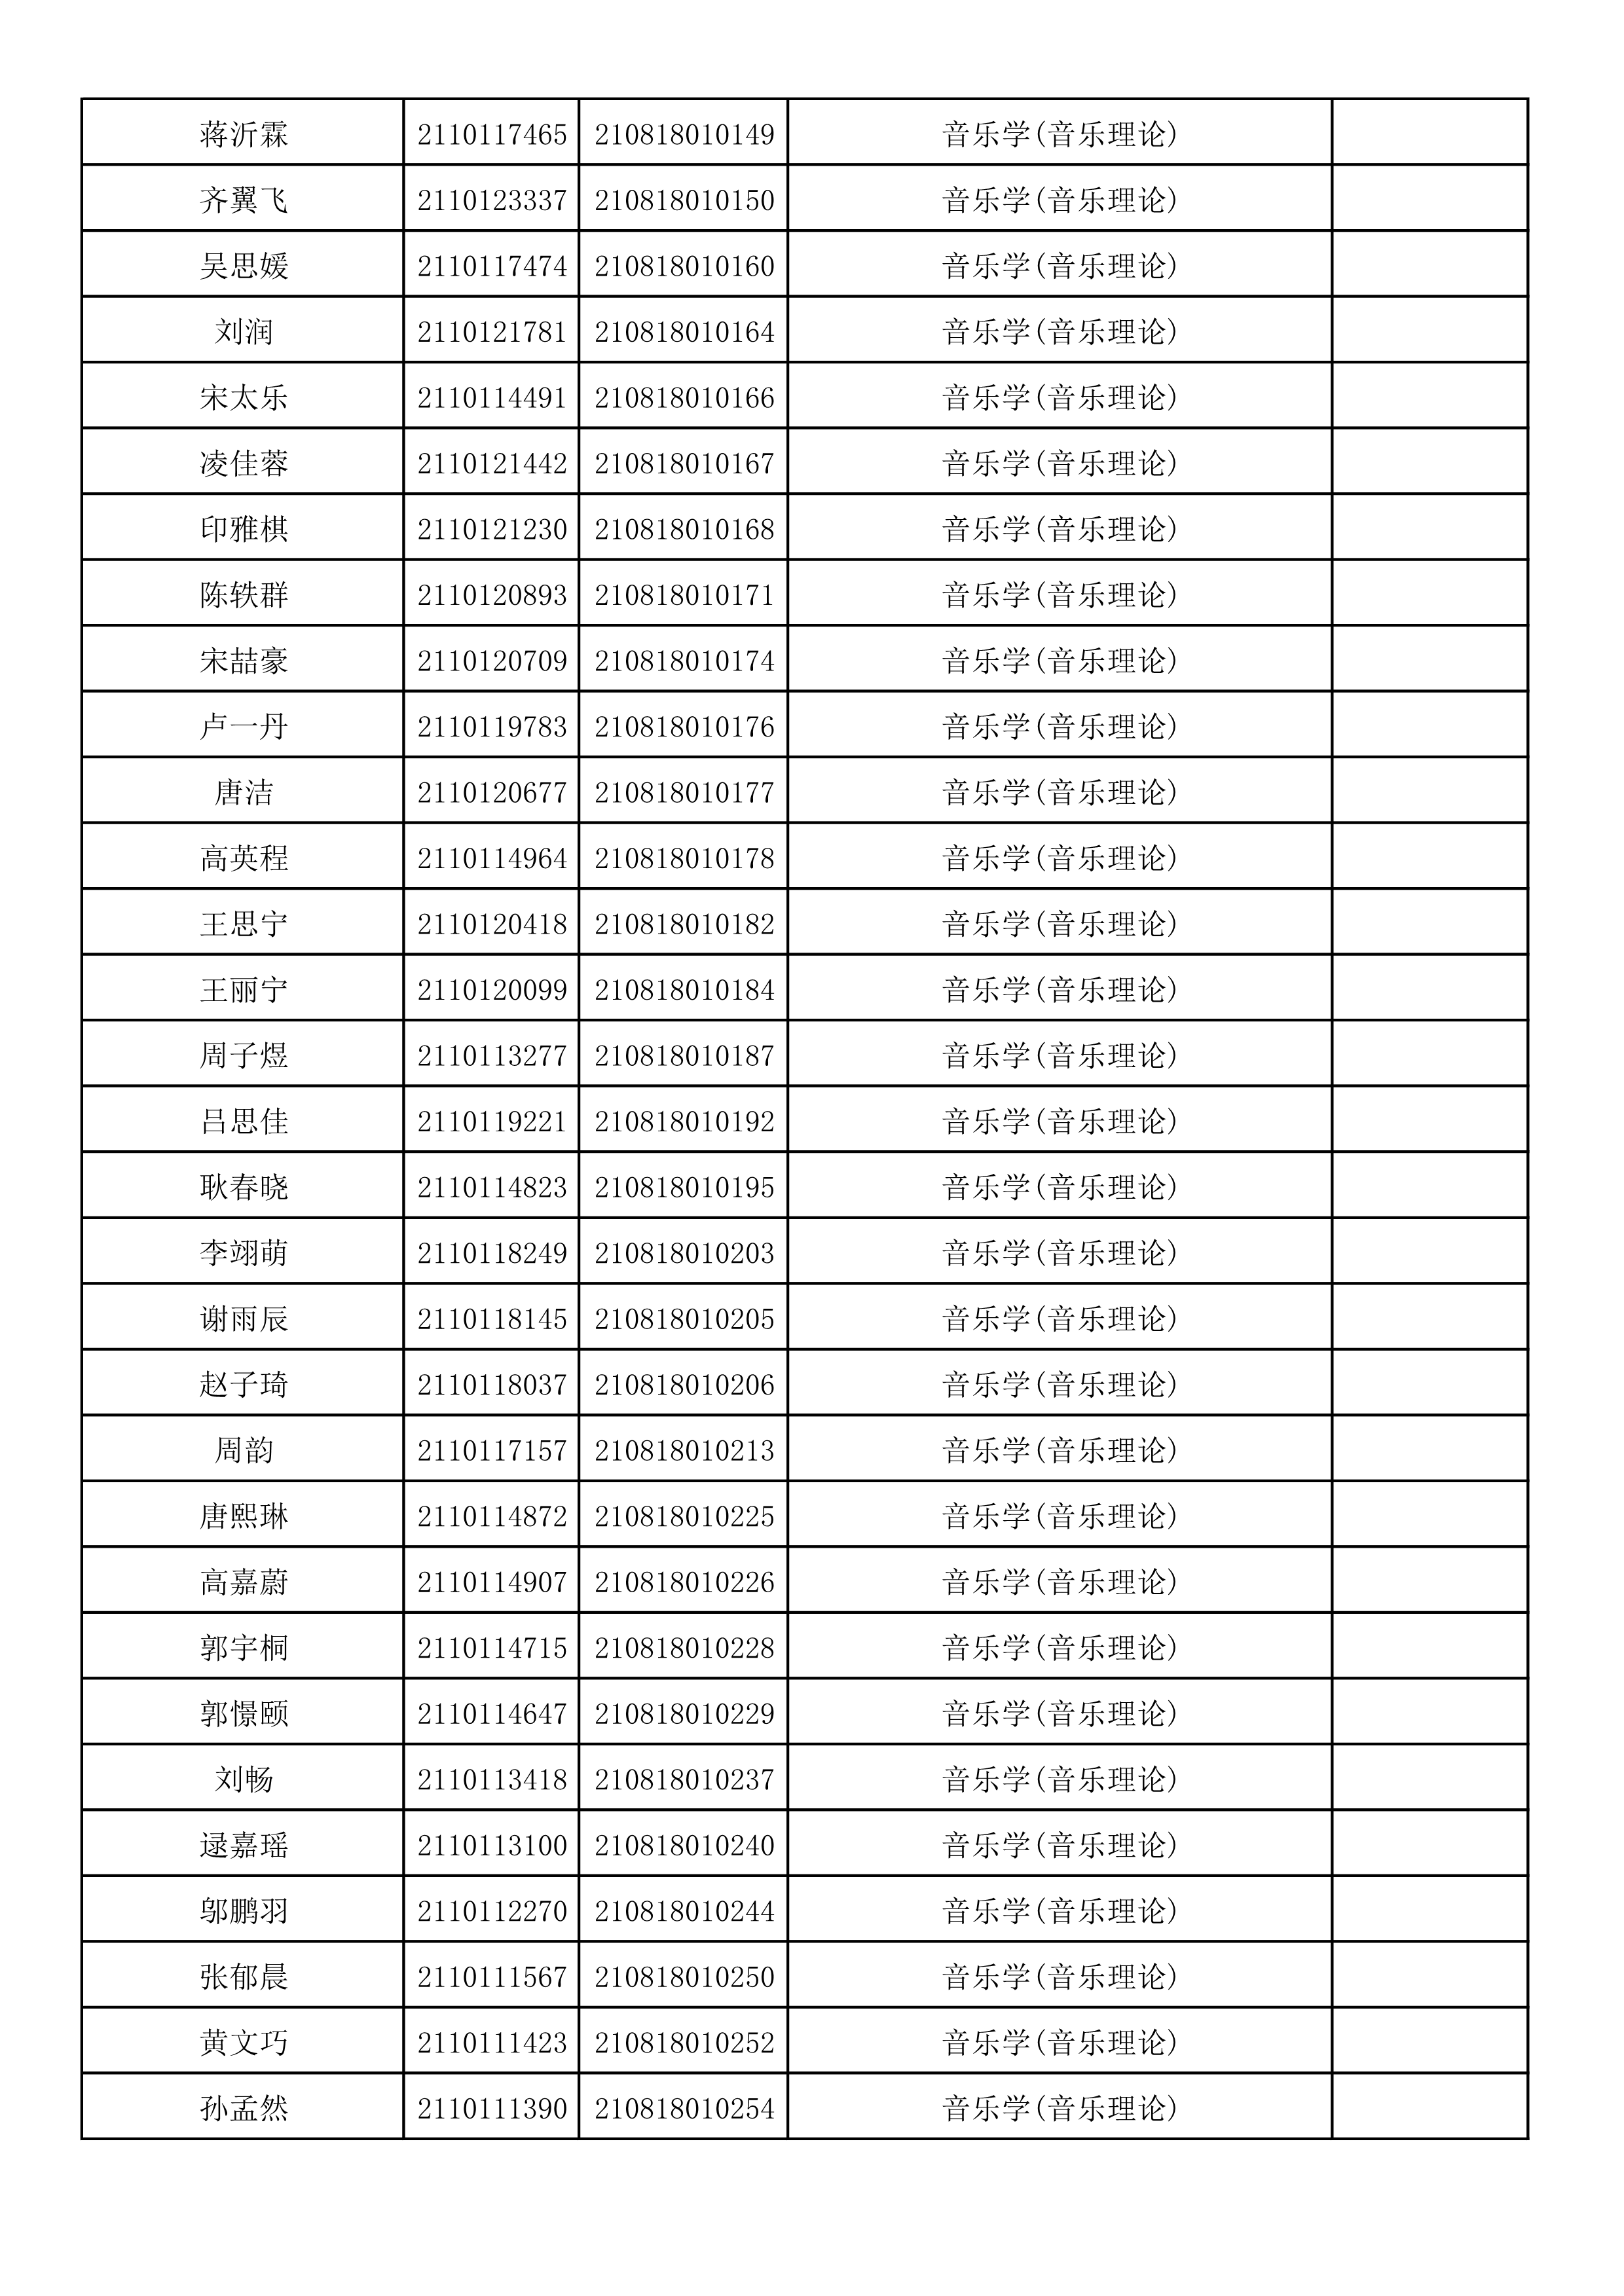 附件2：浙江音乐学院2021年本科招生专业校考初试合格考生名单_8.png